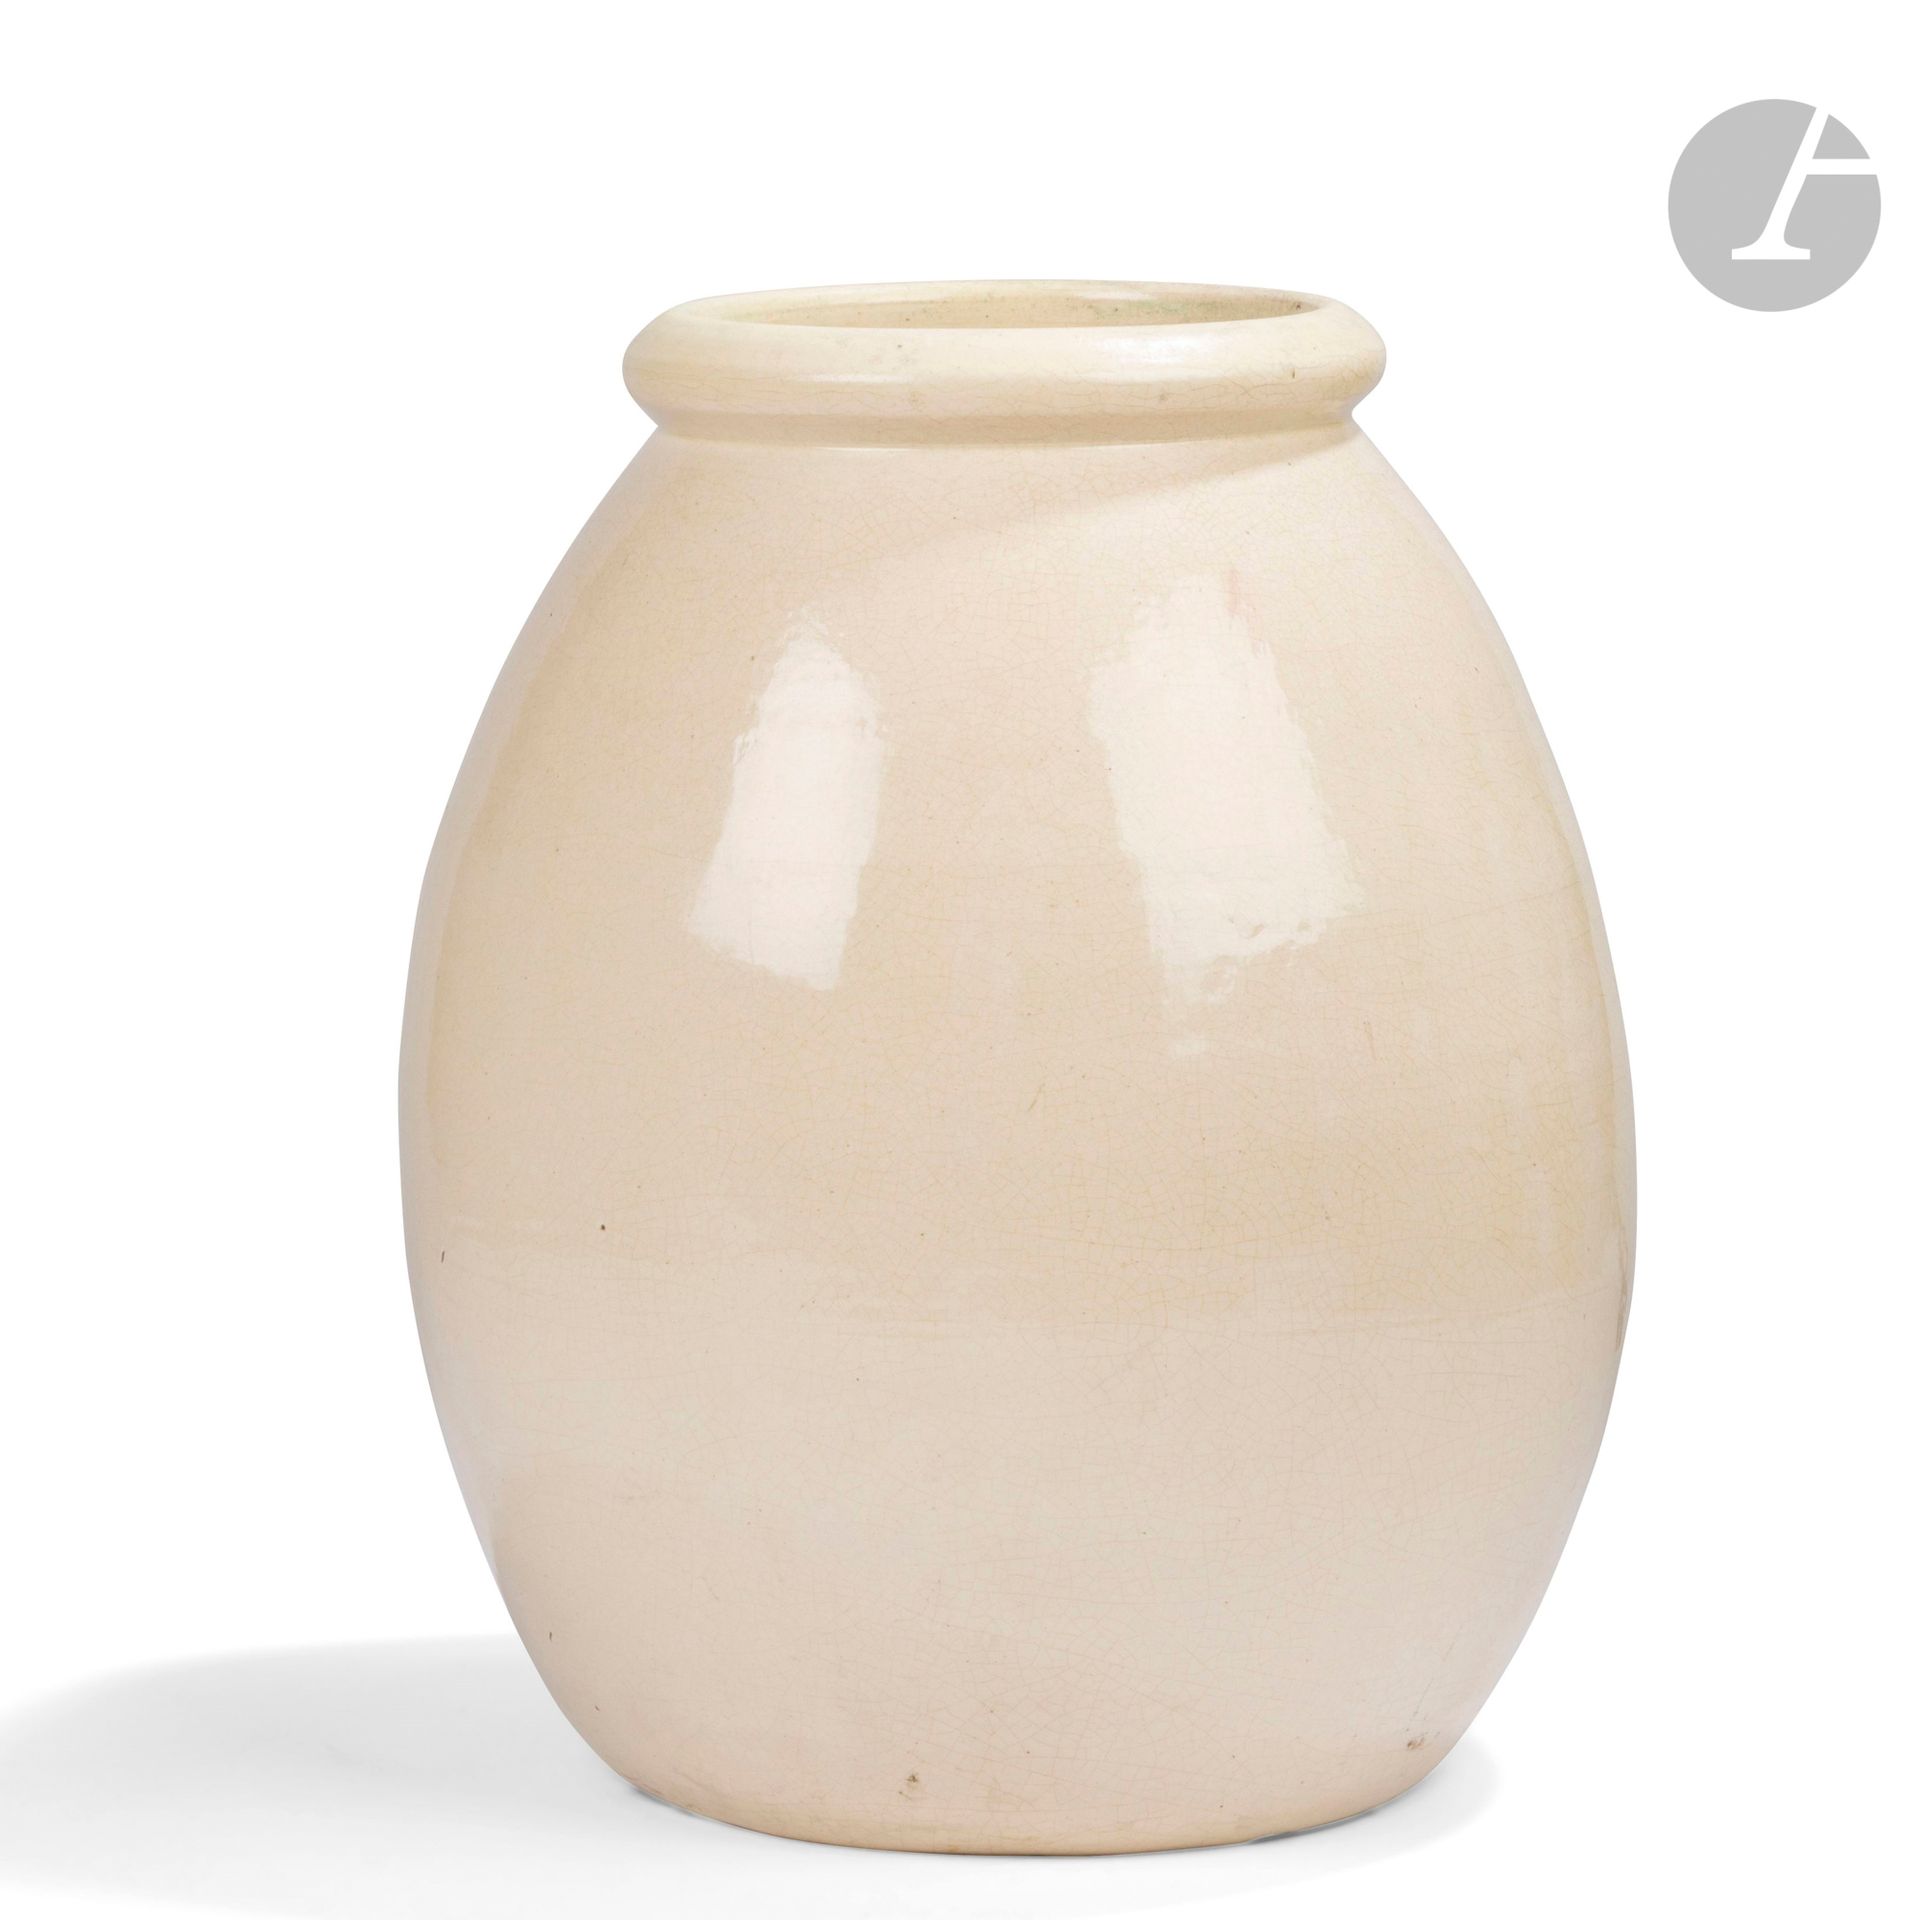 Null 让-贝斯纳(1889-1958)
无题，1925年
一个非常大的卵形花瓶，有一个宽大的下摆环颈。
象牙色釉面的陶瓷证明，有精细的裂纹。 
底下有签名和&hellip;